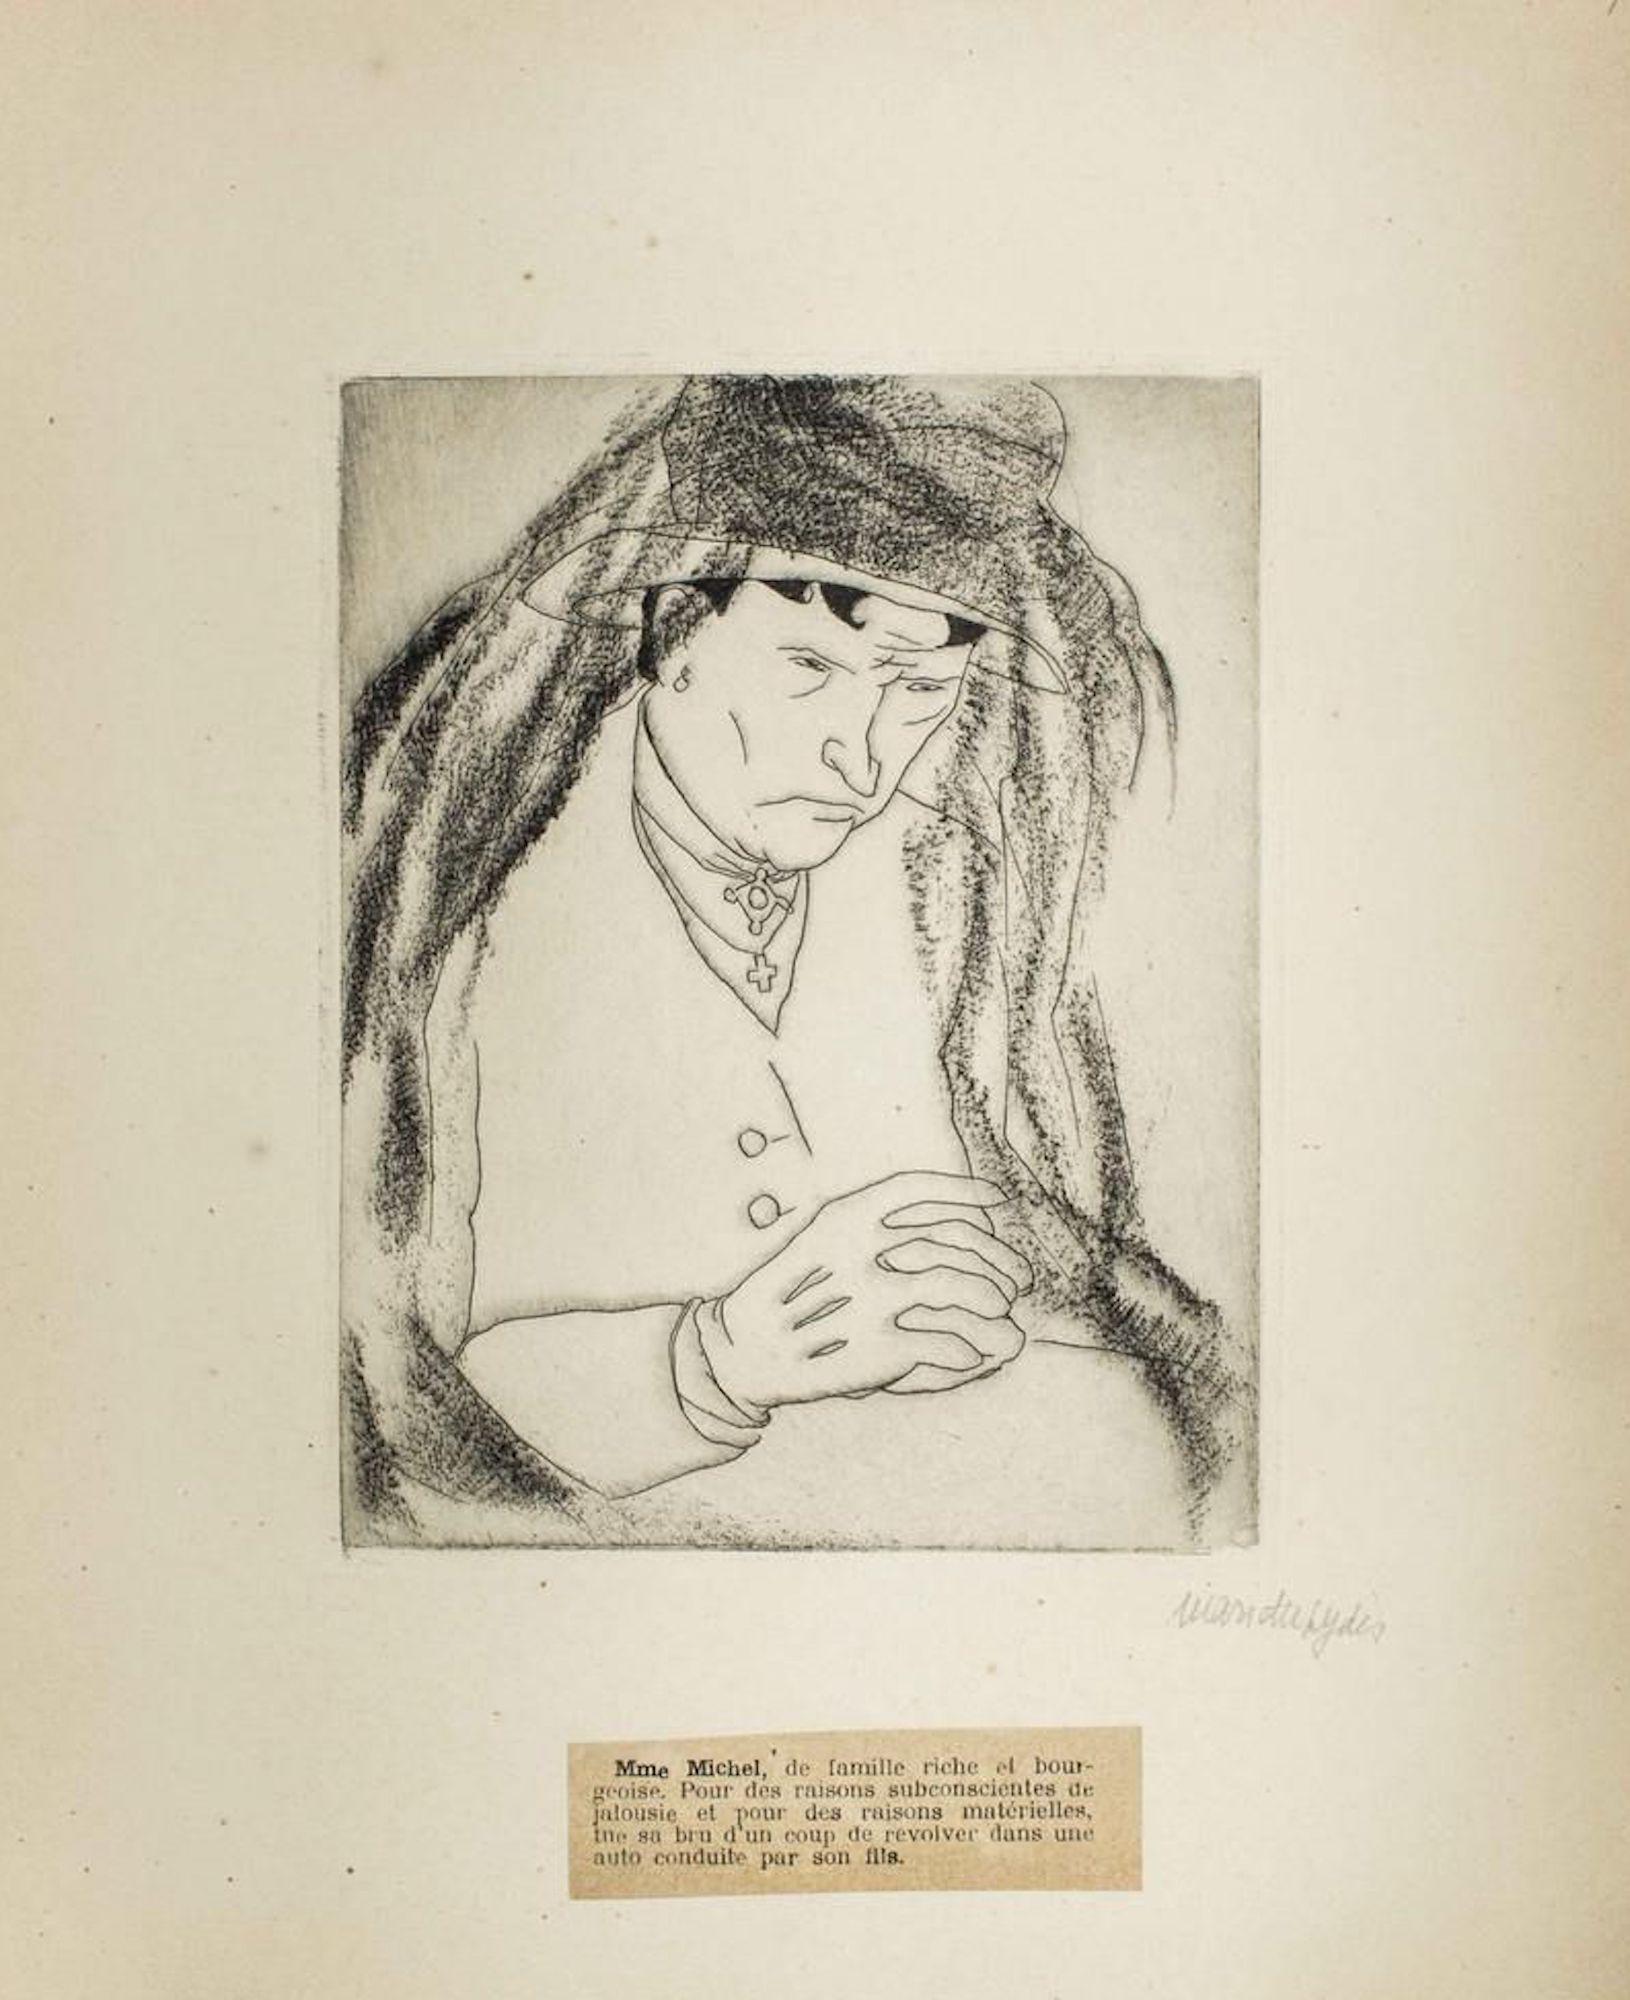 Mariette Lydis Figurative Print - Portrait of M.me Michel - Original Etching by M. Lydis - 1927